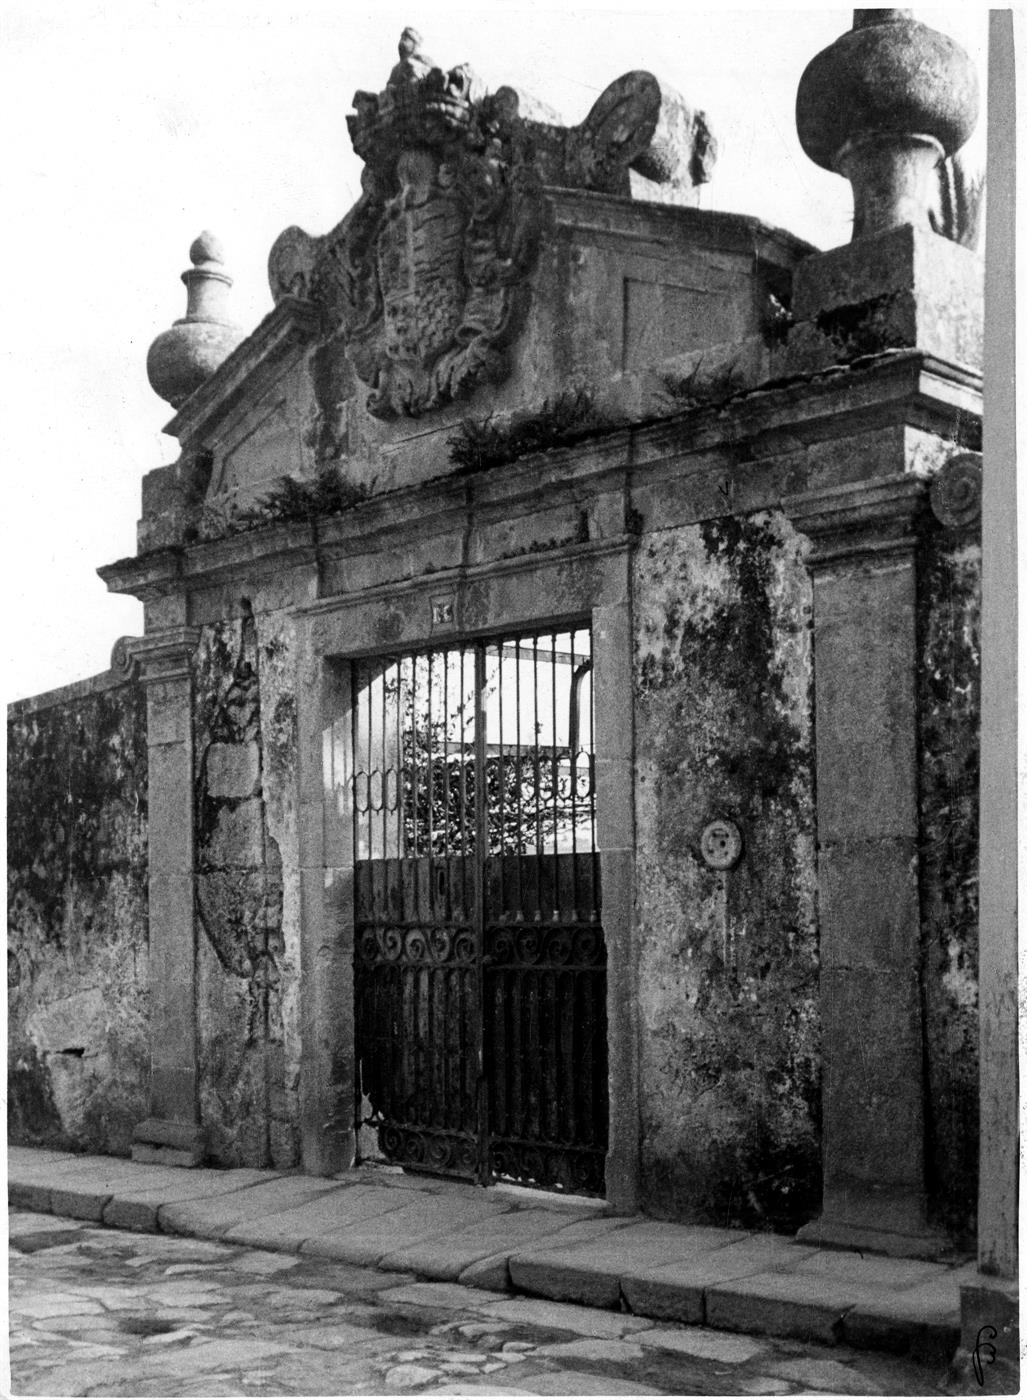 Aspectos arqueológicos e artísticos da cidade do Porto : portão da Casa de Bonjóia